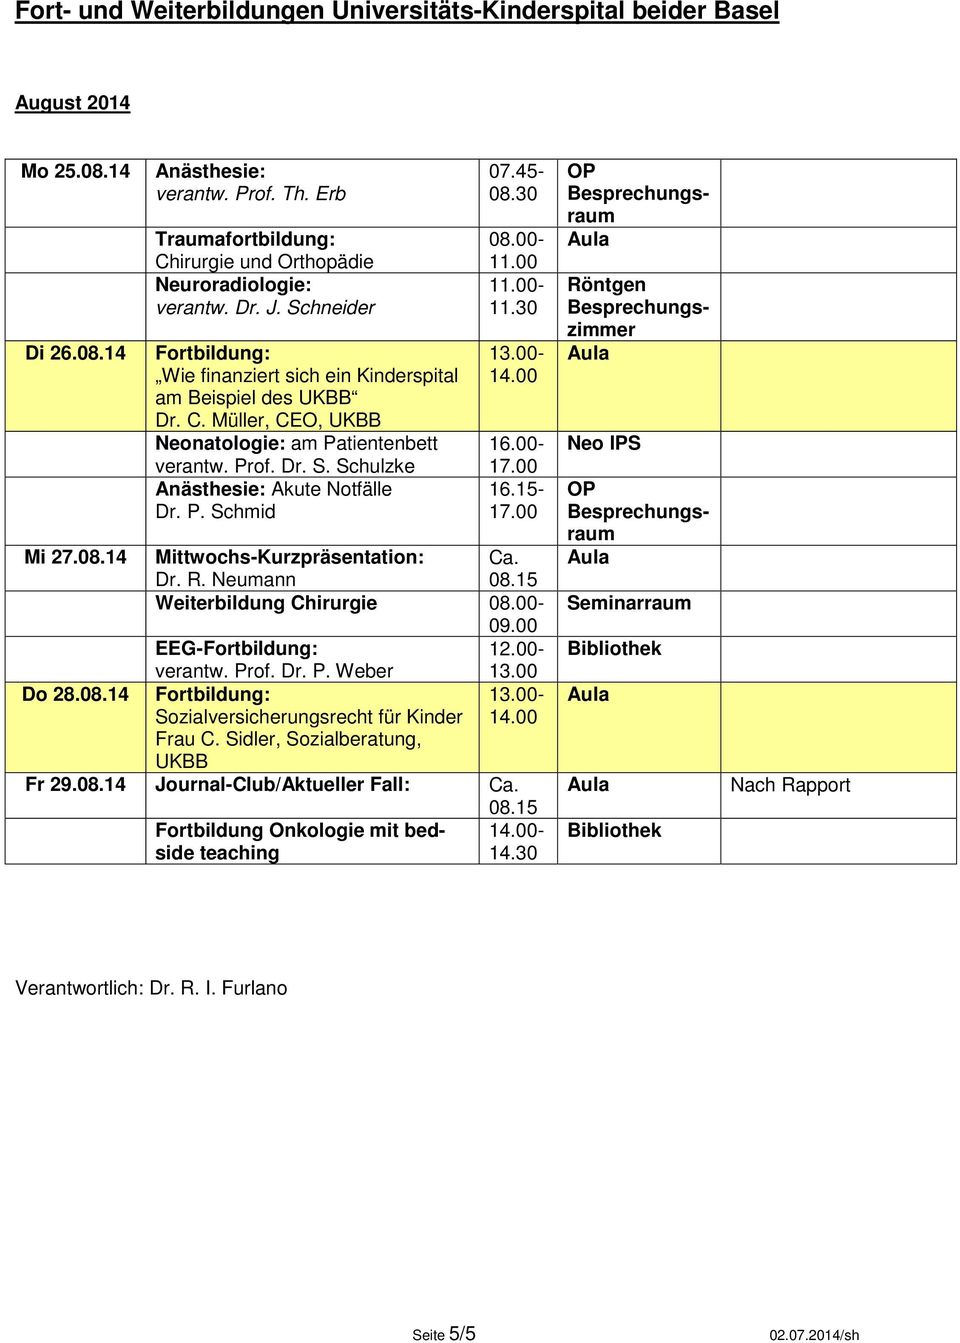 Neumann Weiterbildung Chirurgie 12.00- Do 28.08.14 Sozialversicherungsrecht für Kinder Frau C.